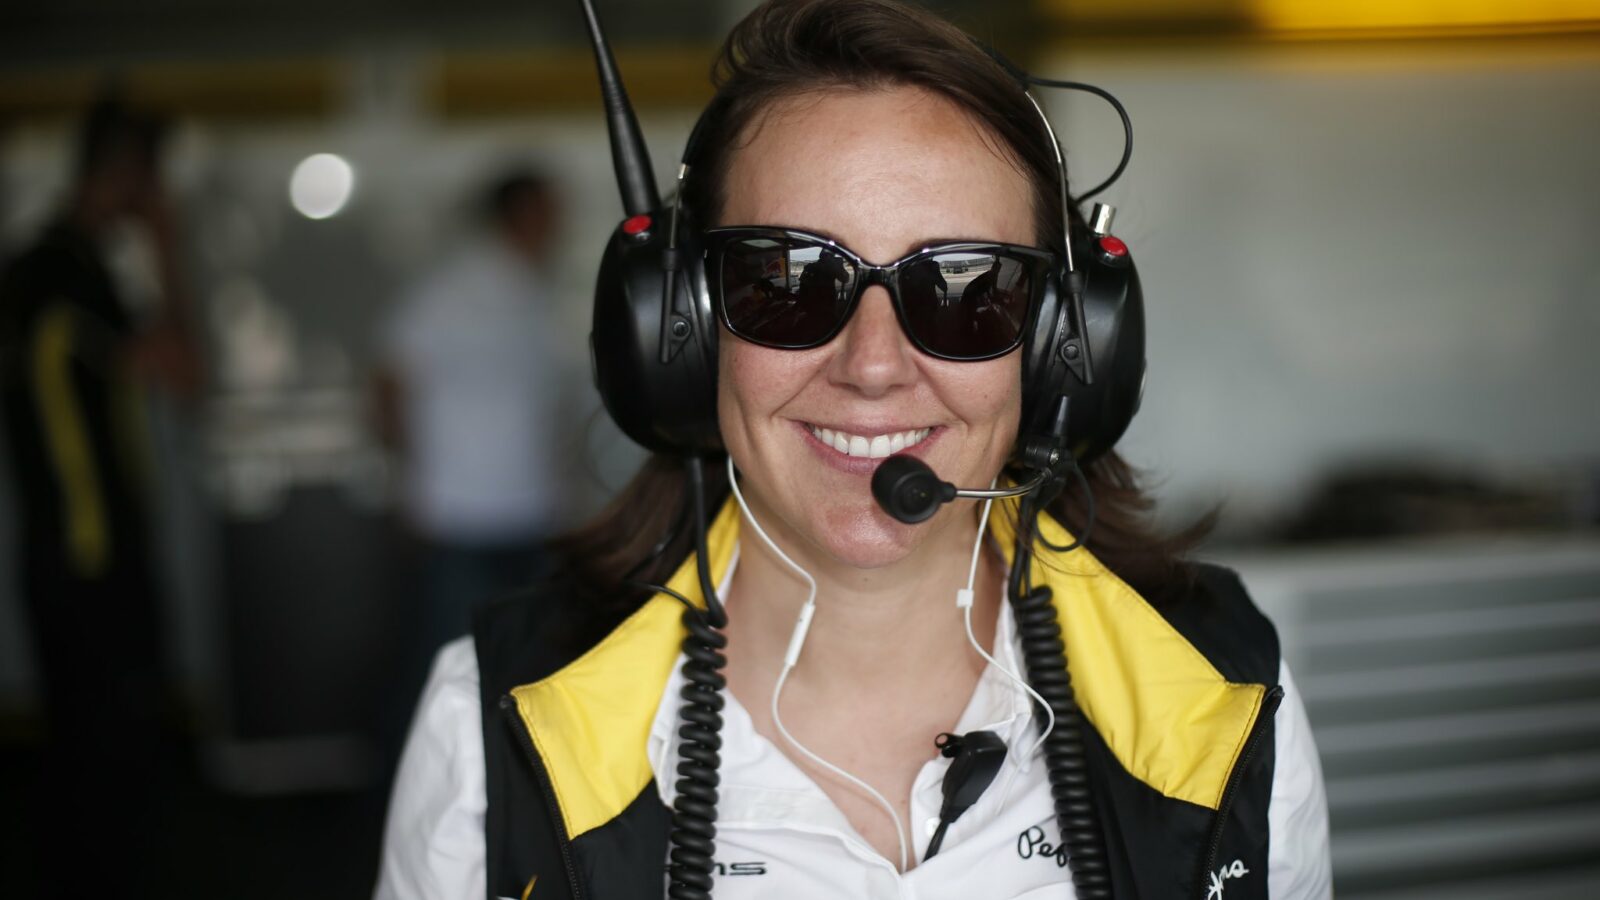 Formelsport: Caroline Grifnée verstorben